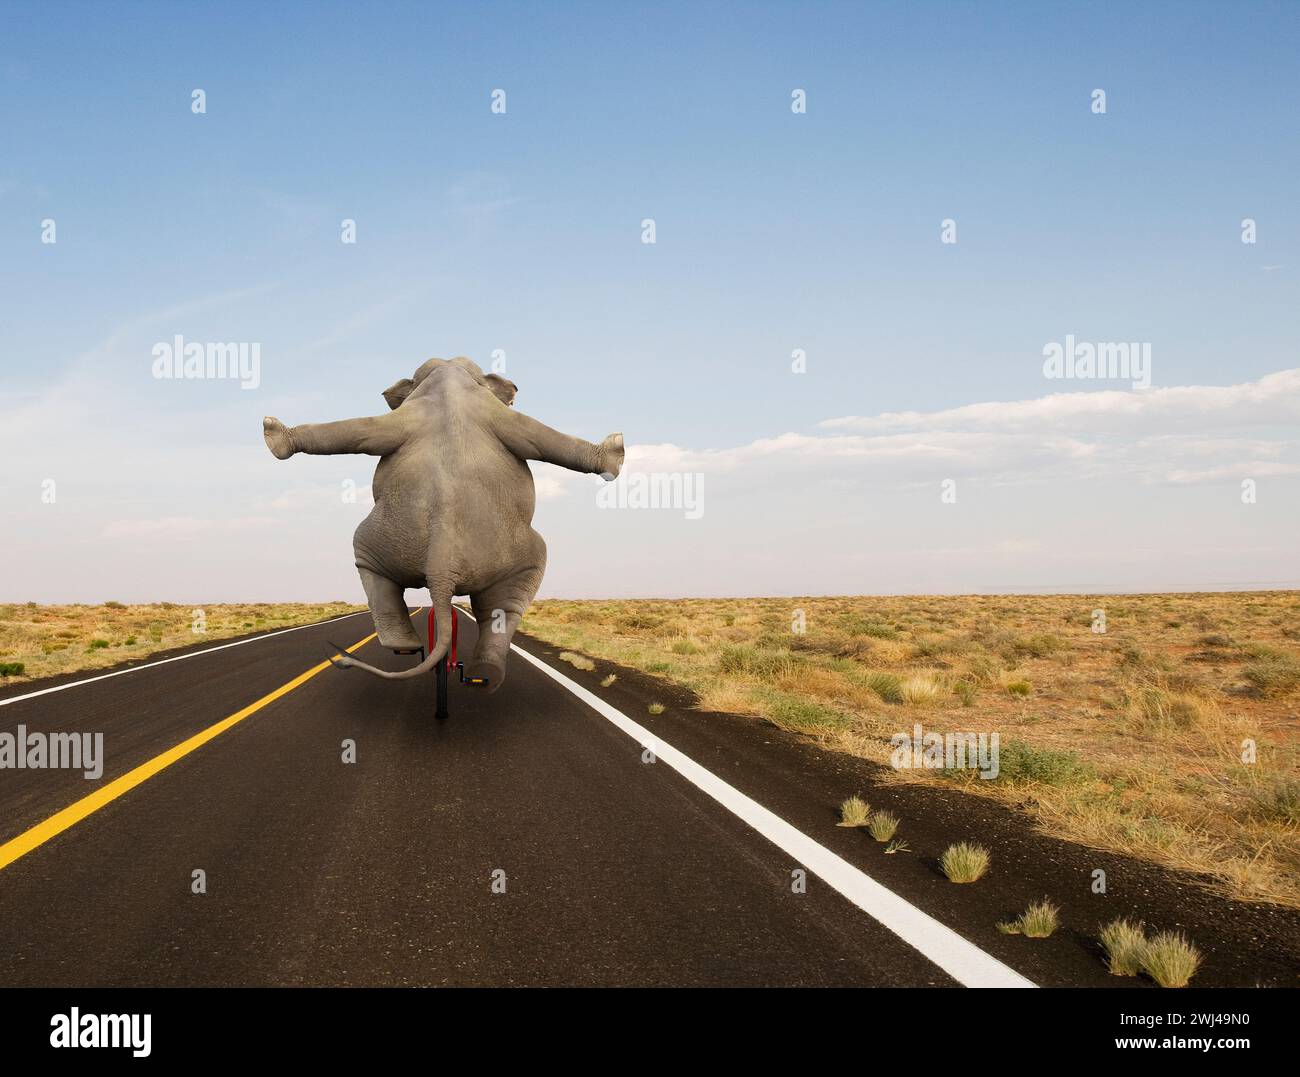 Un éléphant monte un monocycle sur une longue autoroute dans une image amusante sur l'équilibre inattendu, la compétence et l'agilité. Banque D'Images